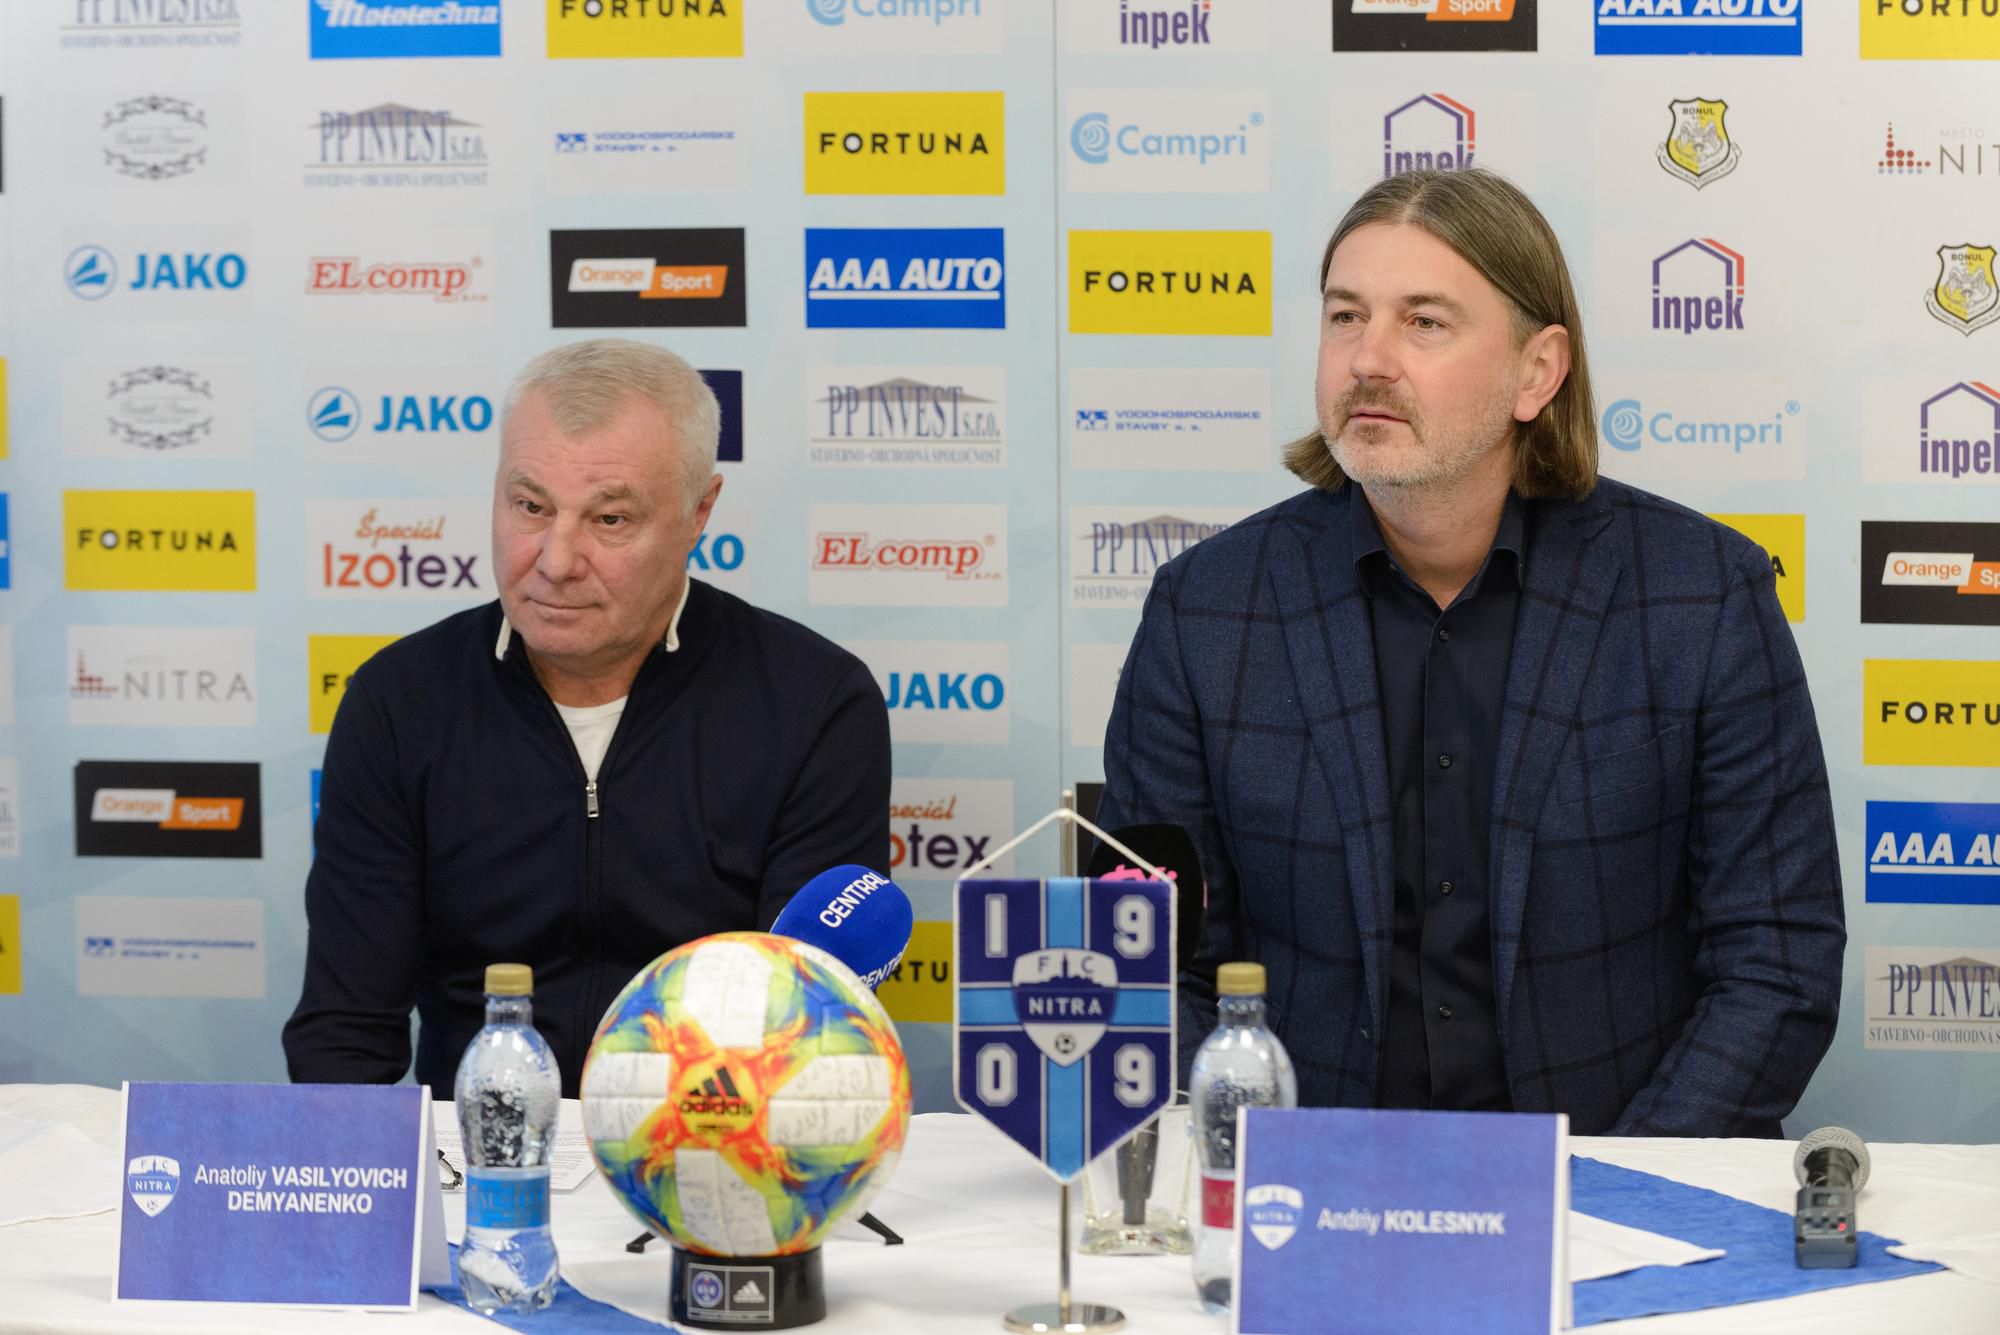 Vľavo nový tréner Anatolij Vasiľovič Demjanenko a športový riaditeľ klubu Andrej Kolesnik.